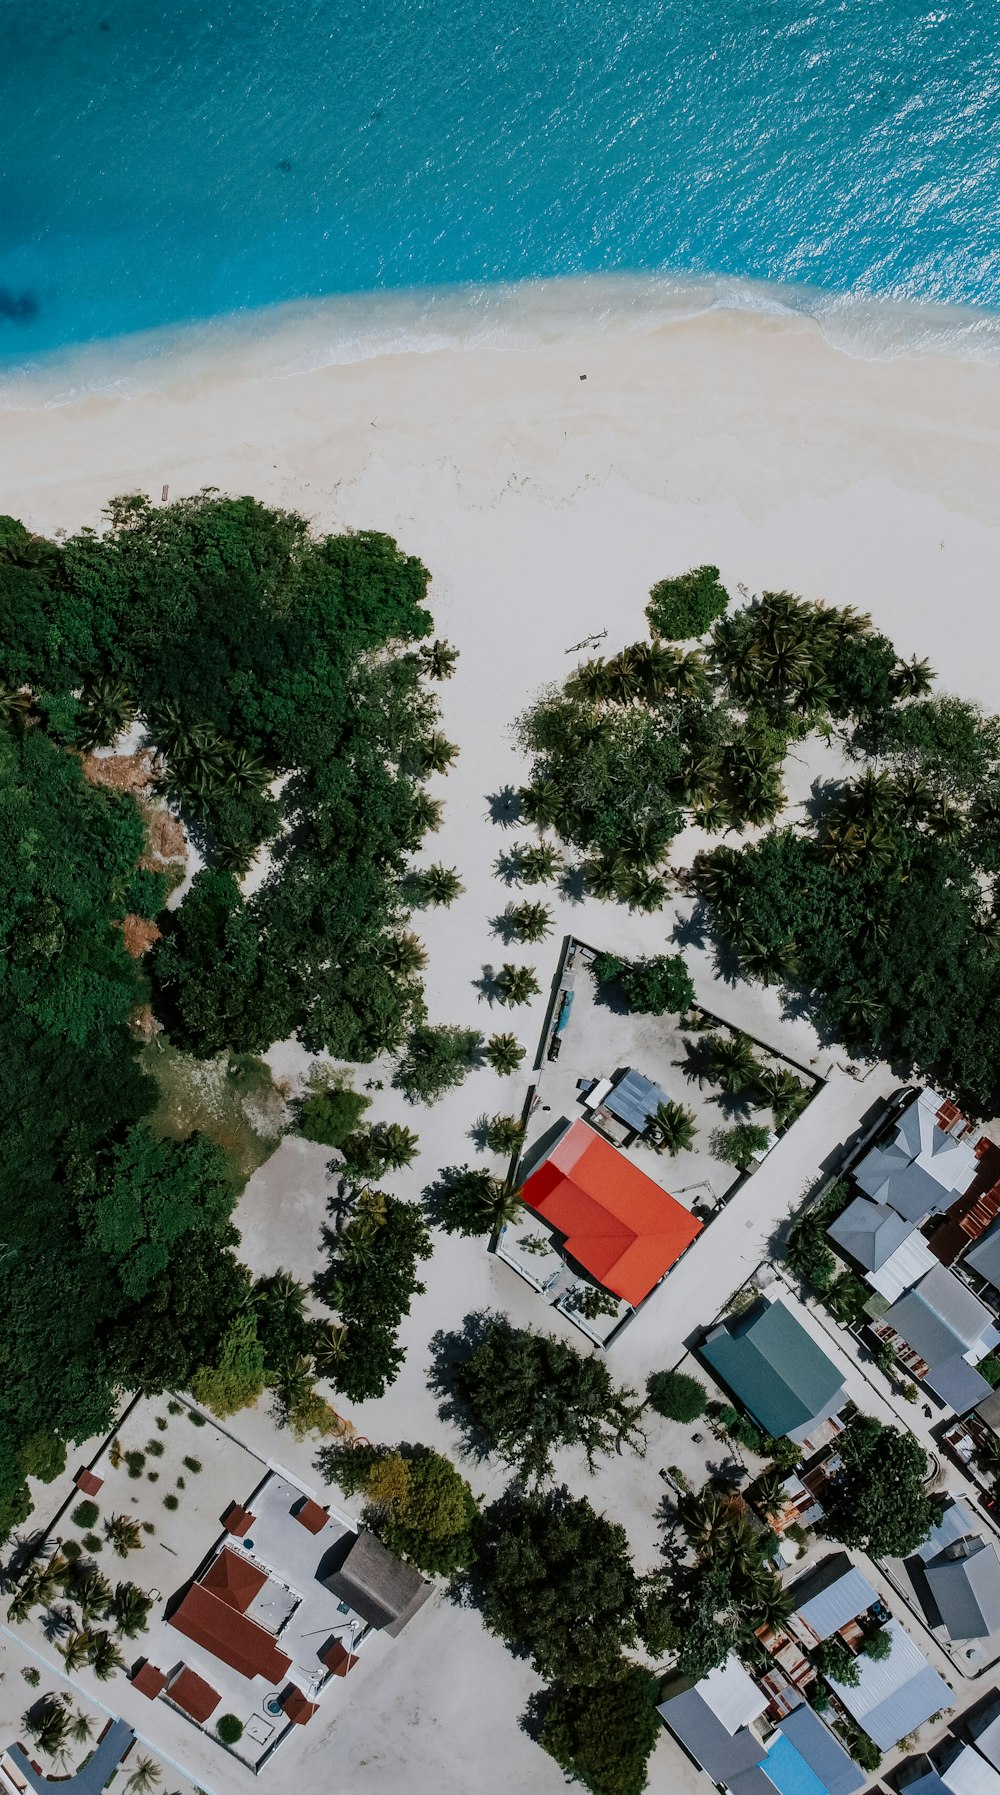 Una vista aérea de una playa con casas y árboles